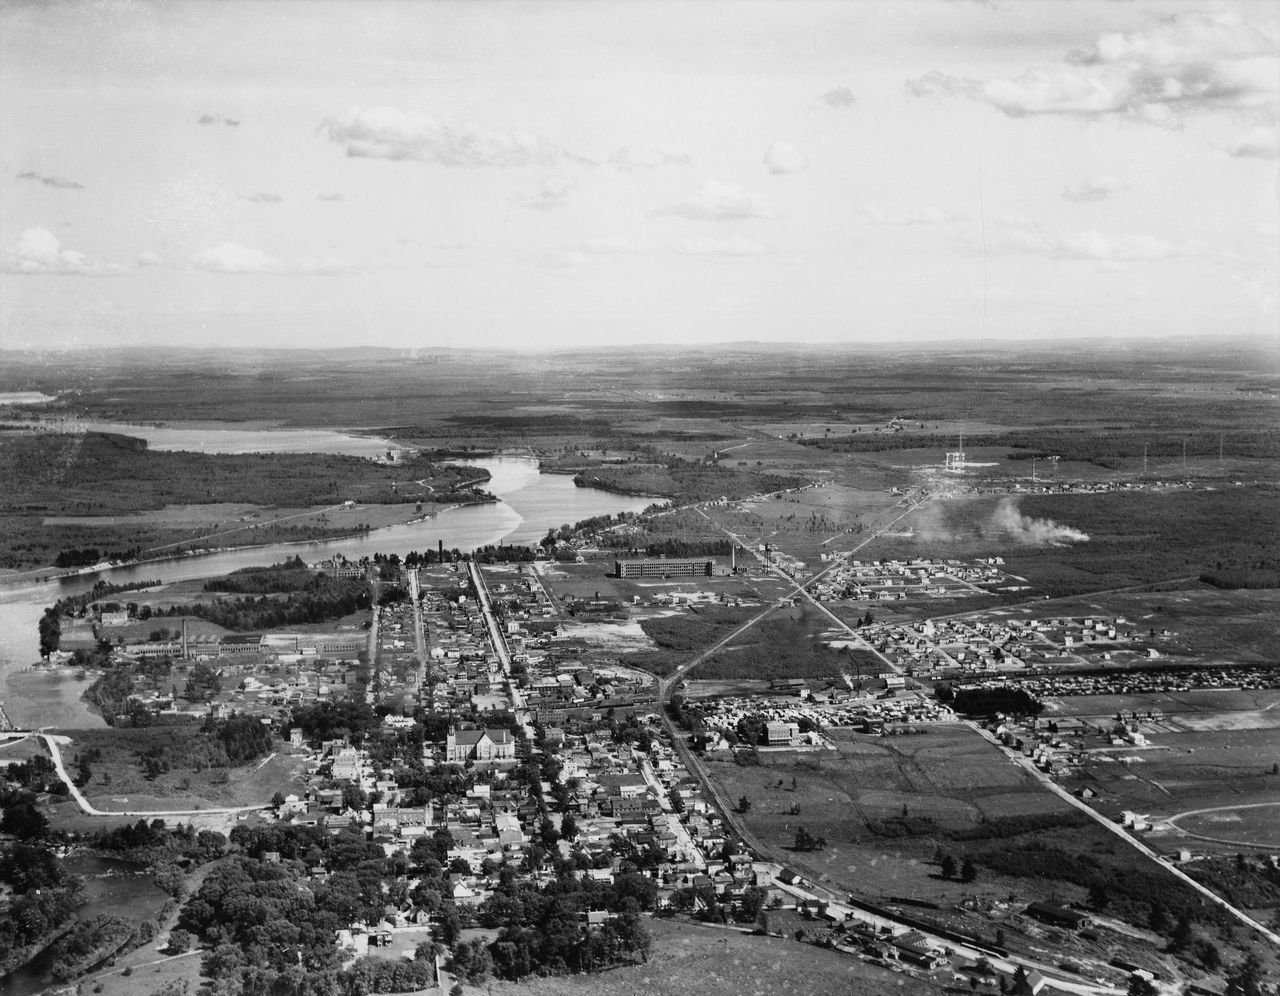 Photographie en noir et blanc démontrant une vue aérienne du centre-ville de Drummondville. On y voit les maisons, les églises, les usines, les routes ainsi que les chemins de fer.